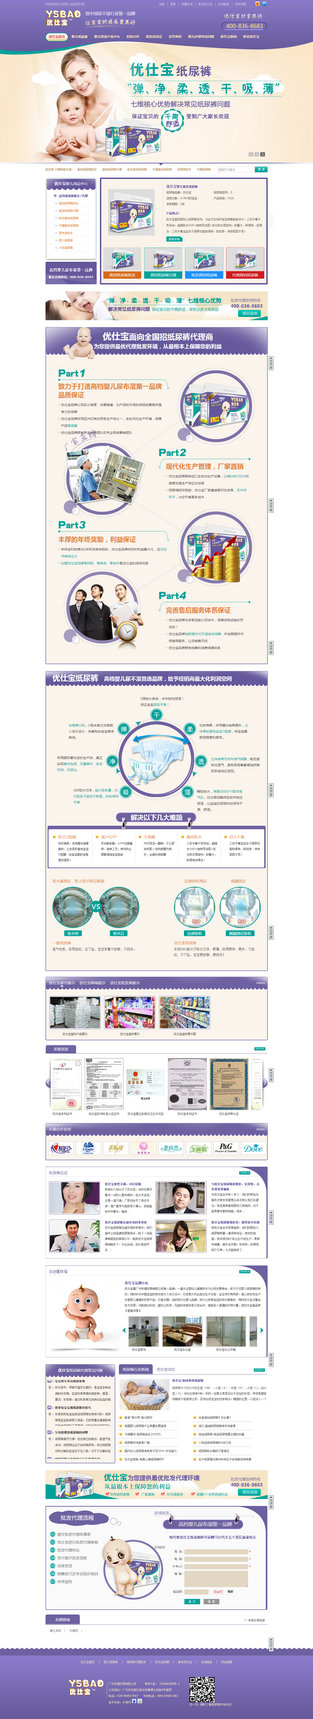 广州优仕宝纸尿裤营销型网站案例展示